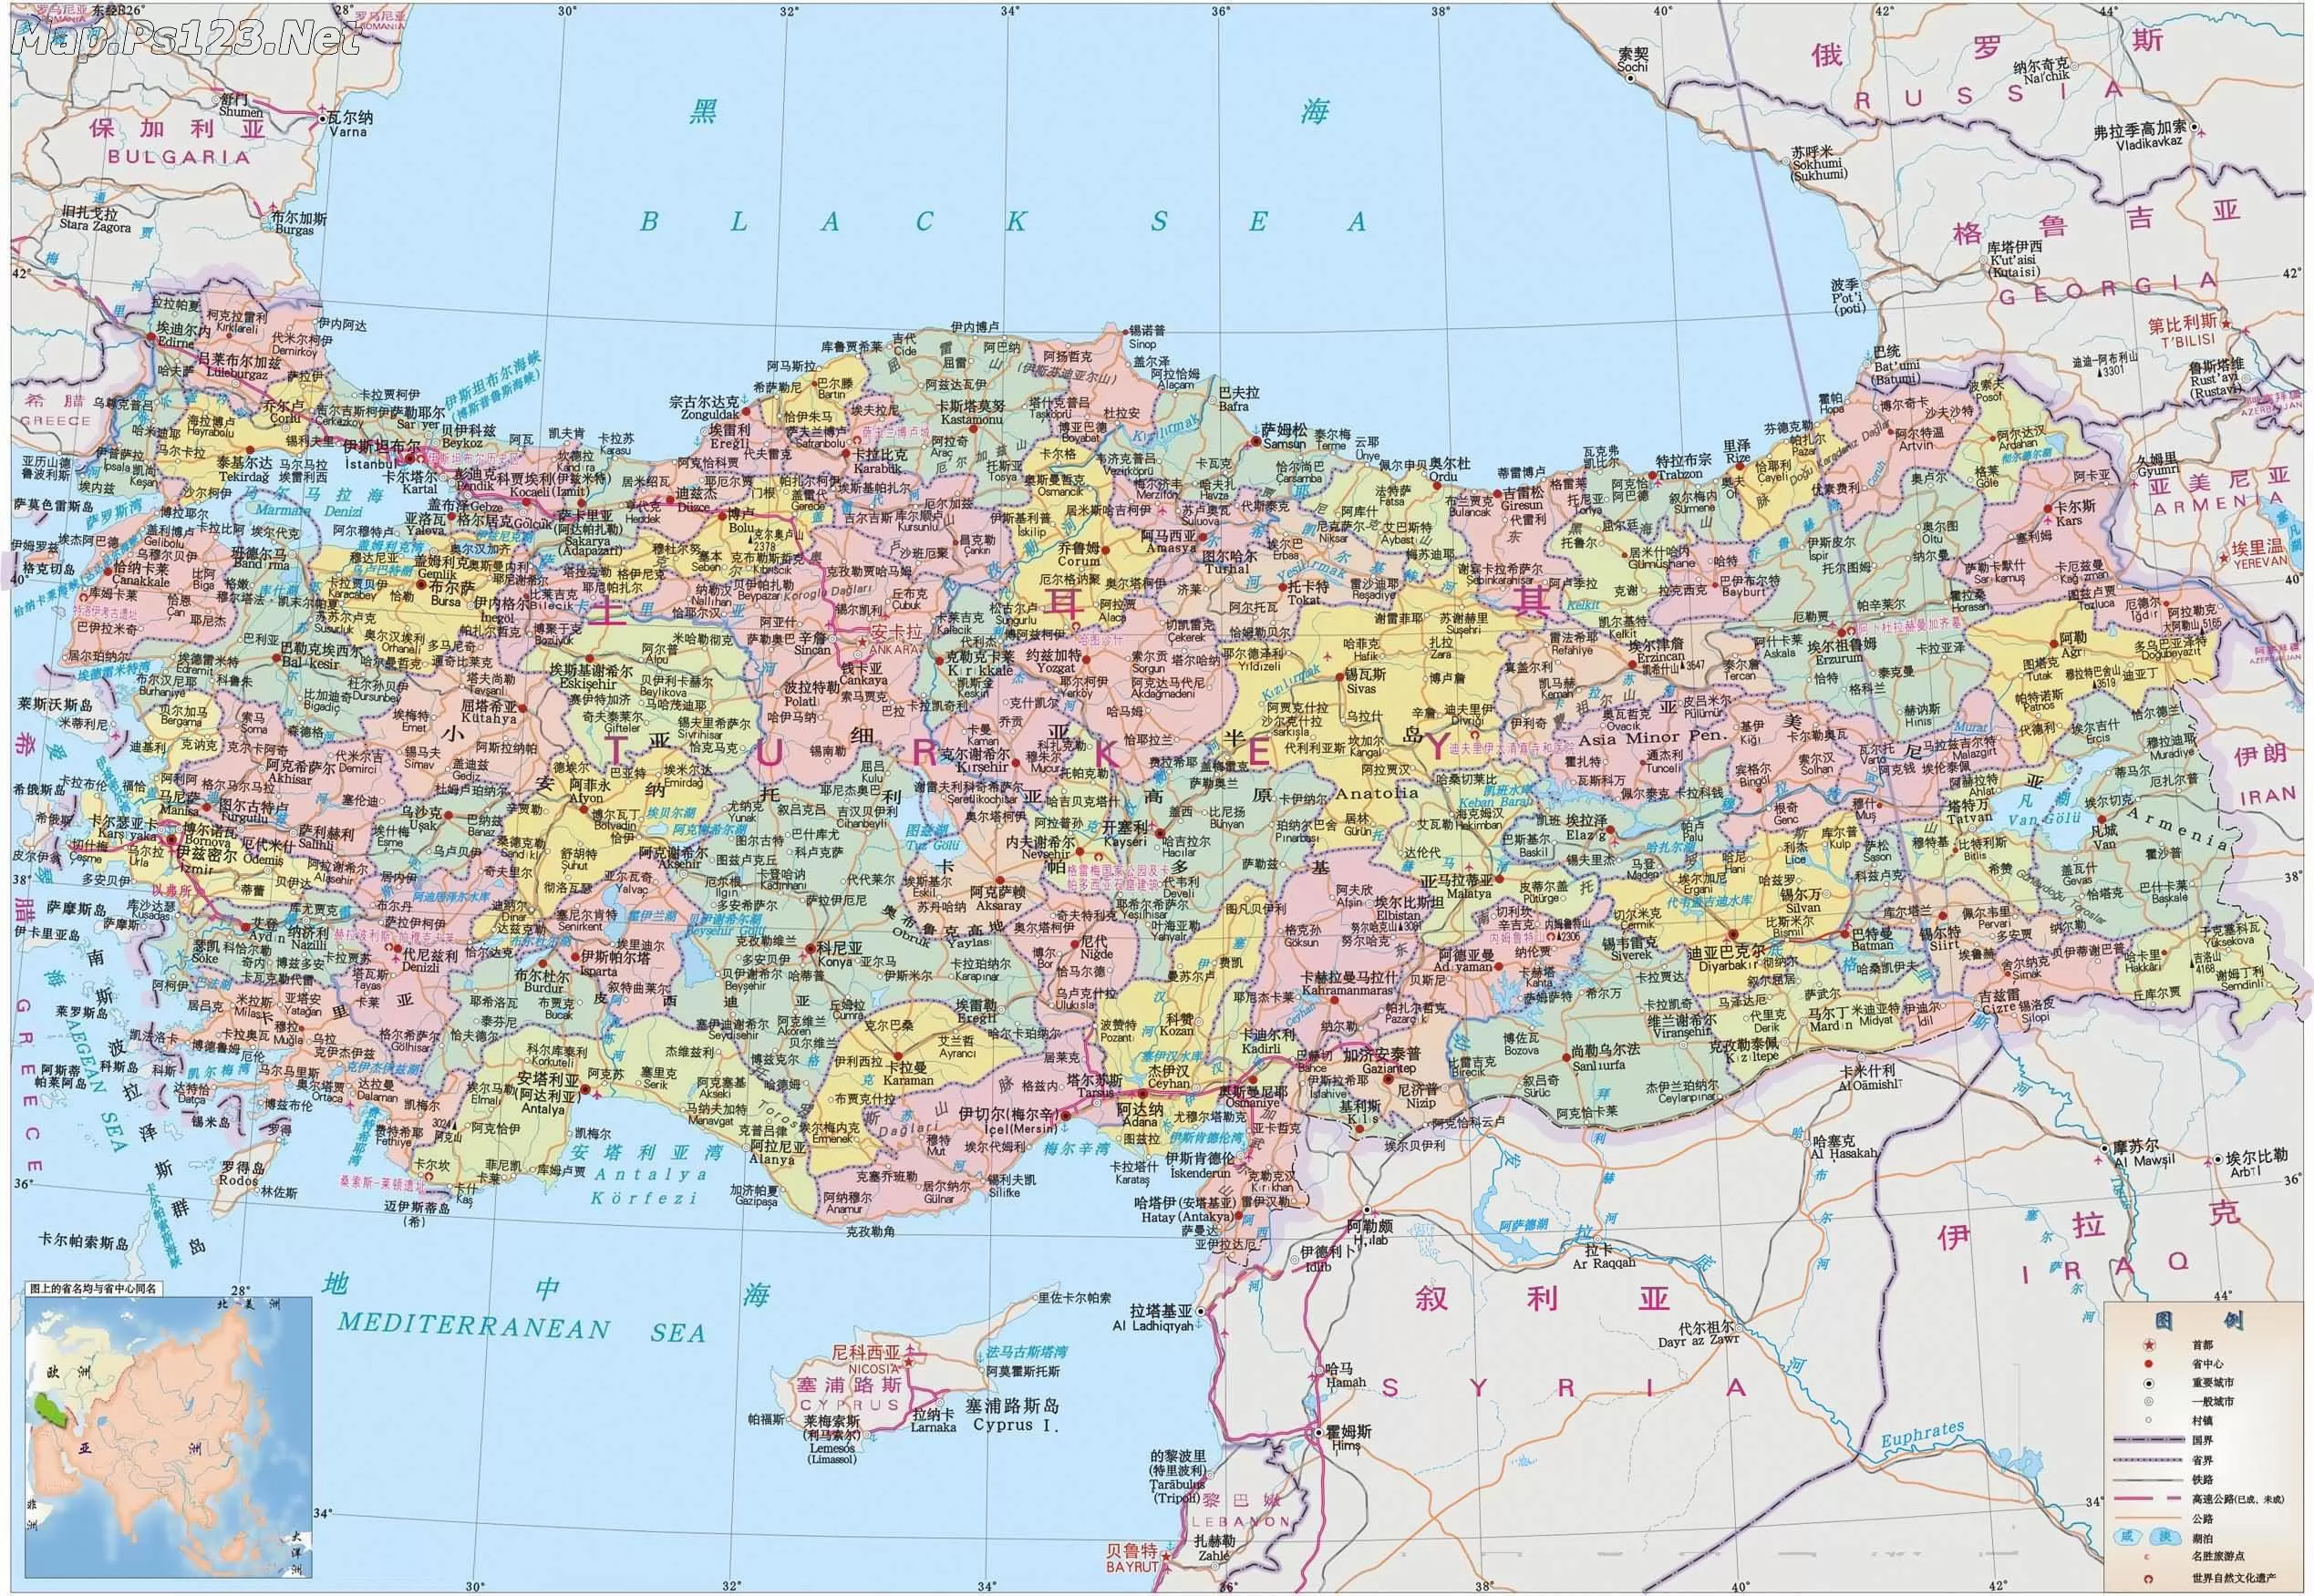 【地图看世界】土耳其（1）：追寻昔日强大帝国遗产的迷失者 - 知乎